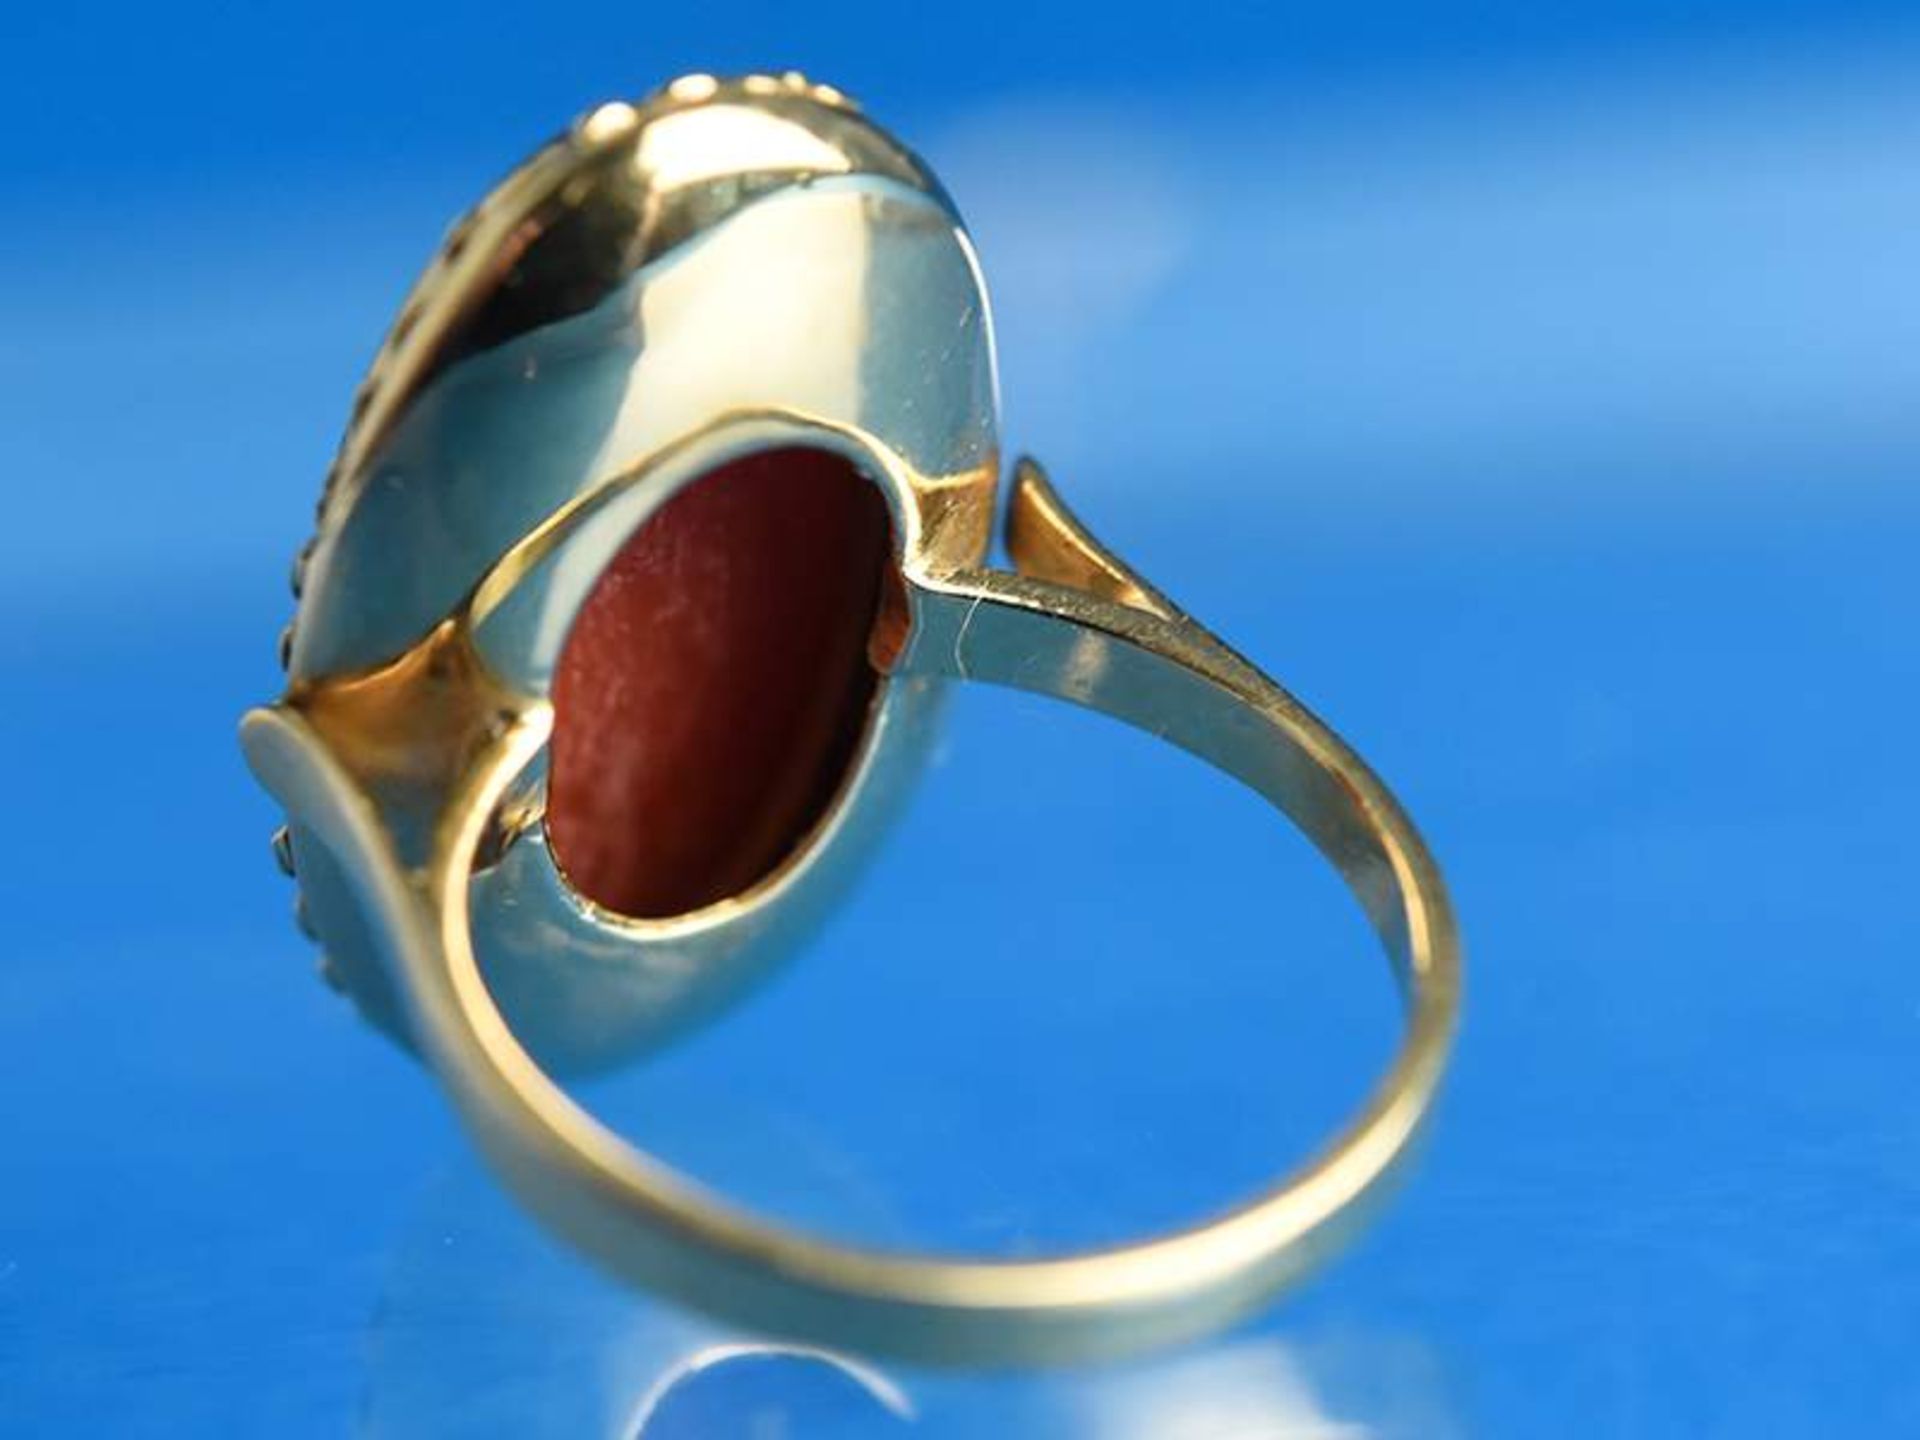 Ring mit Korallencabochon, 20. Jh.
750/-Gelbgold. Gesamtgewicht ca. 5,8 g. Ovaler Korallencabochon - Image 3 of 4